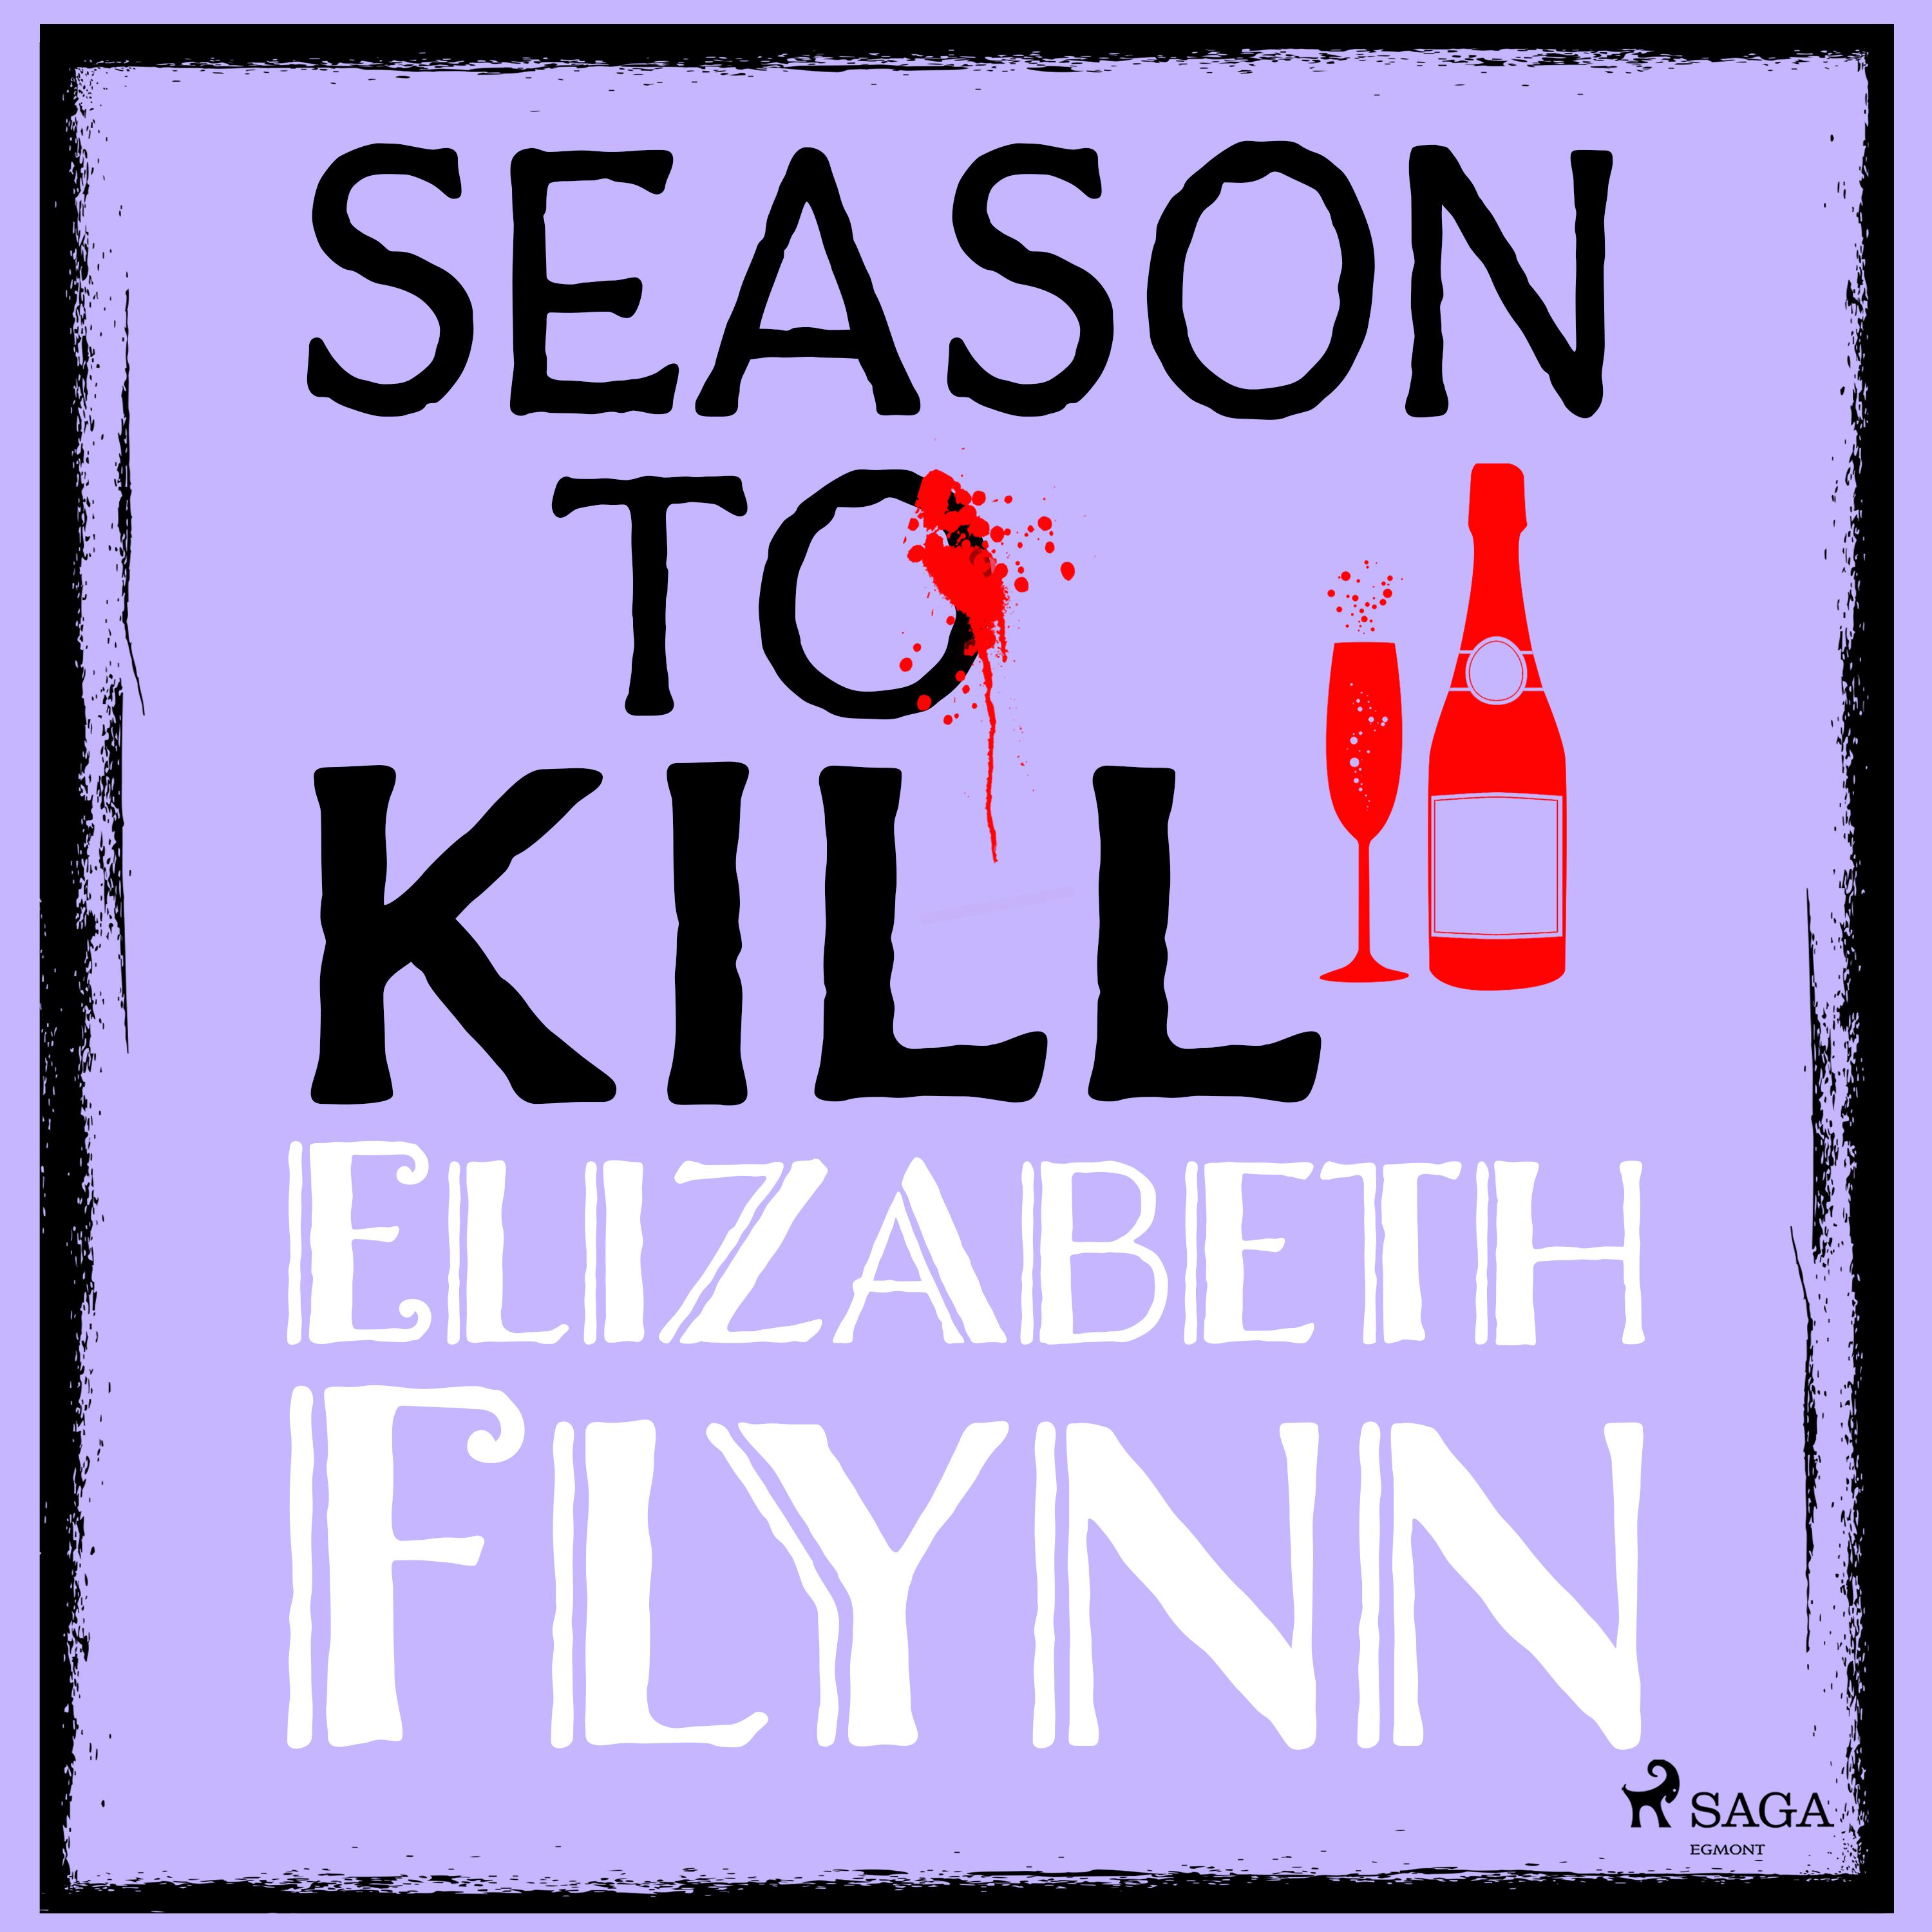 Season to Kill, audiobook by Elizabeth Flynn